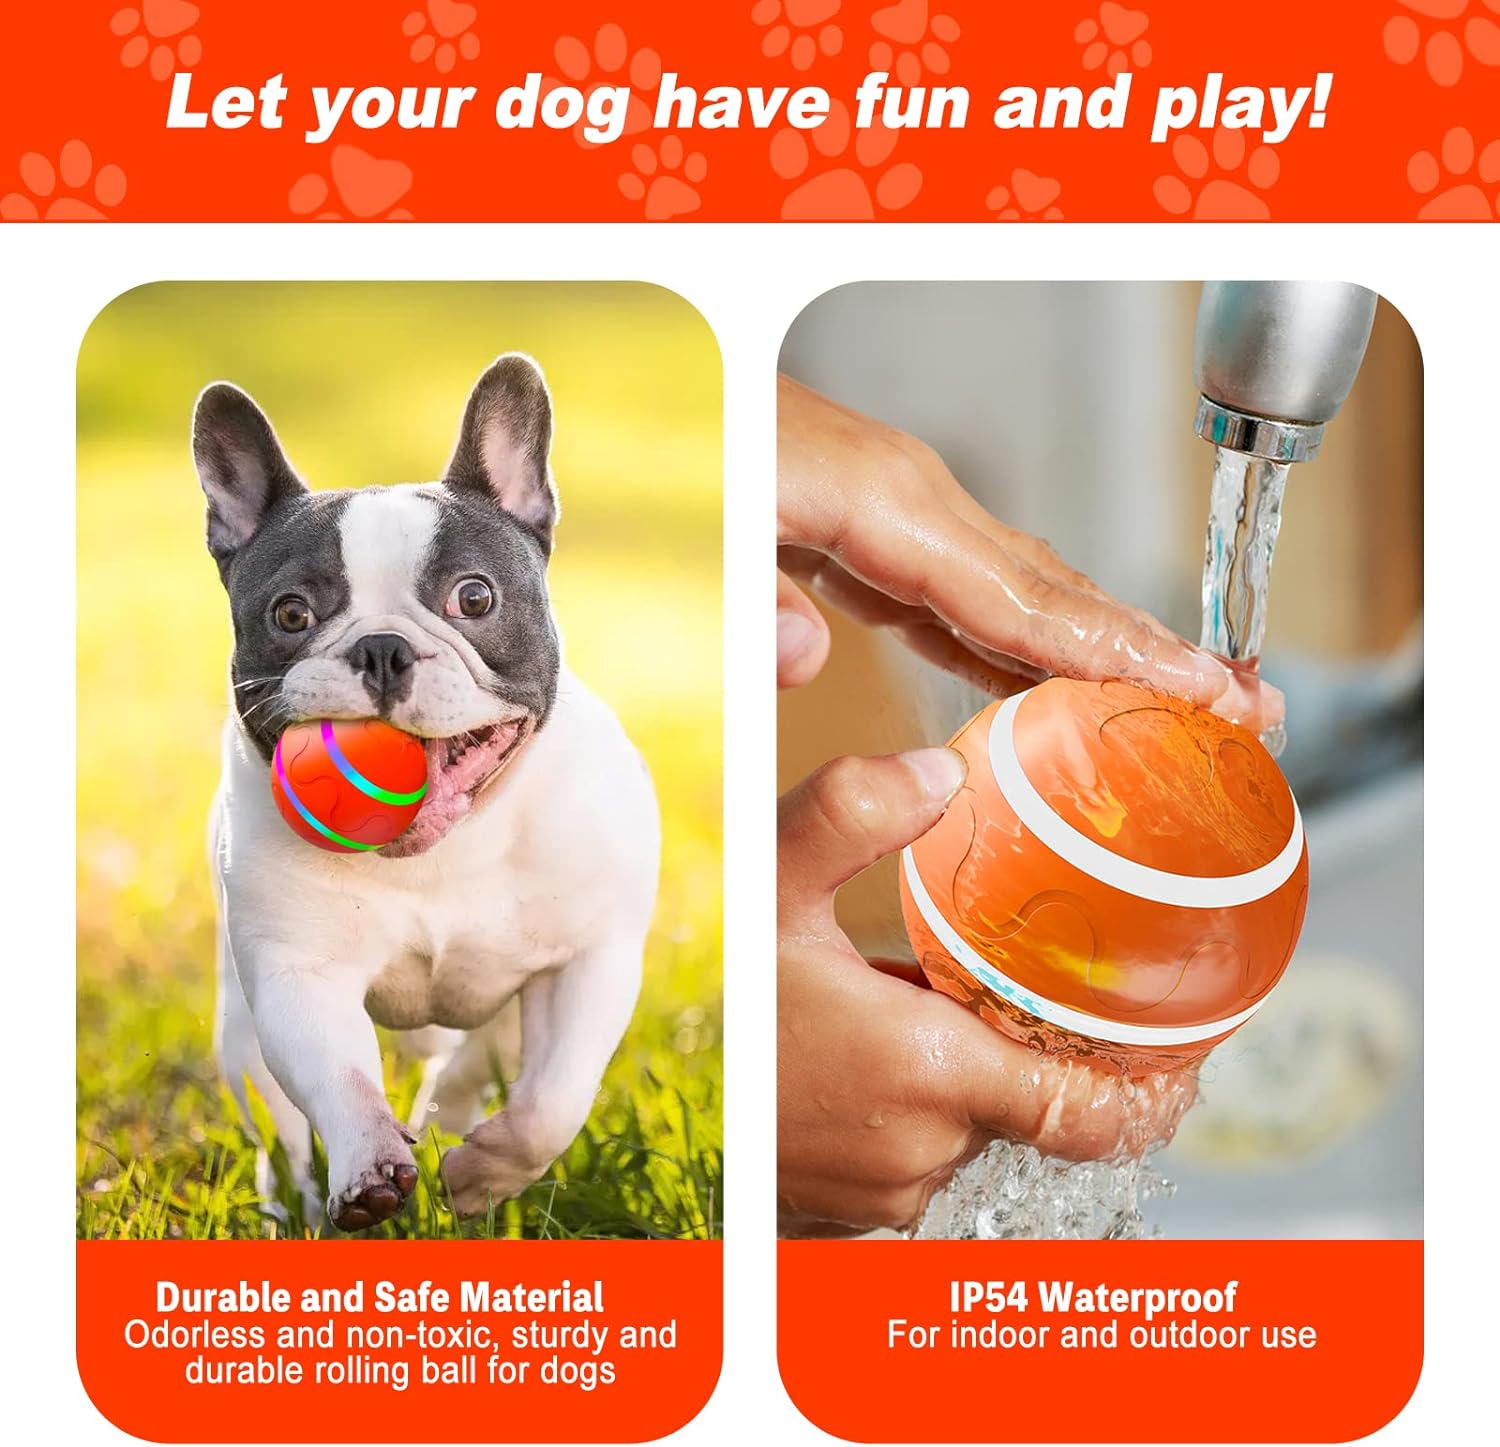 CUXMUX Bola para perros con control remoto, bola rodante activa automática  para perros, juguetes interactivos para perros que se mueven